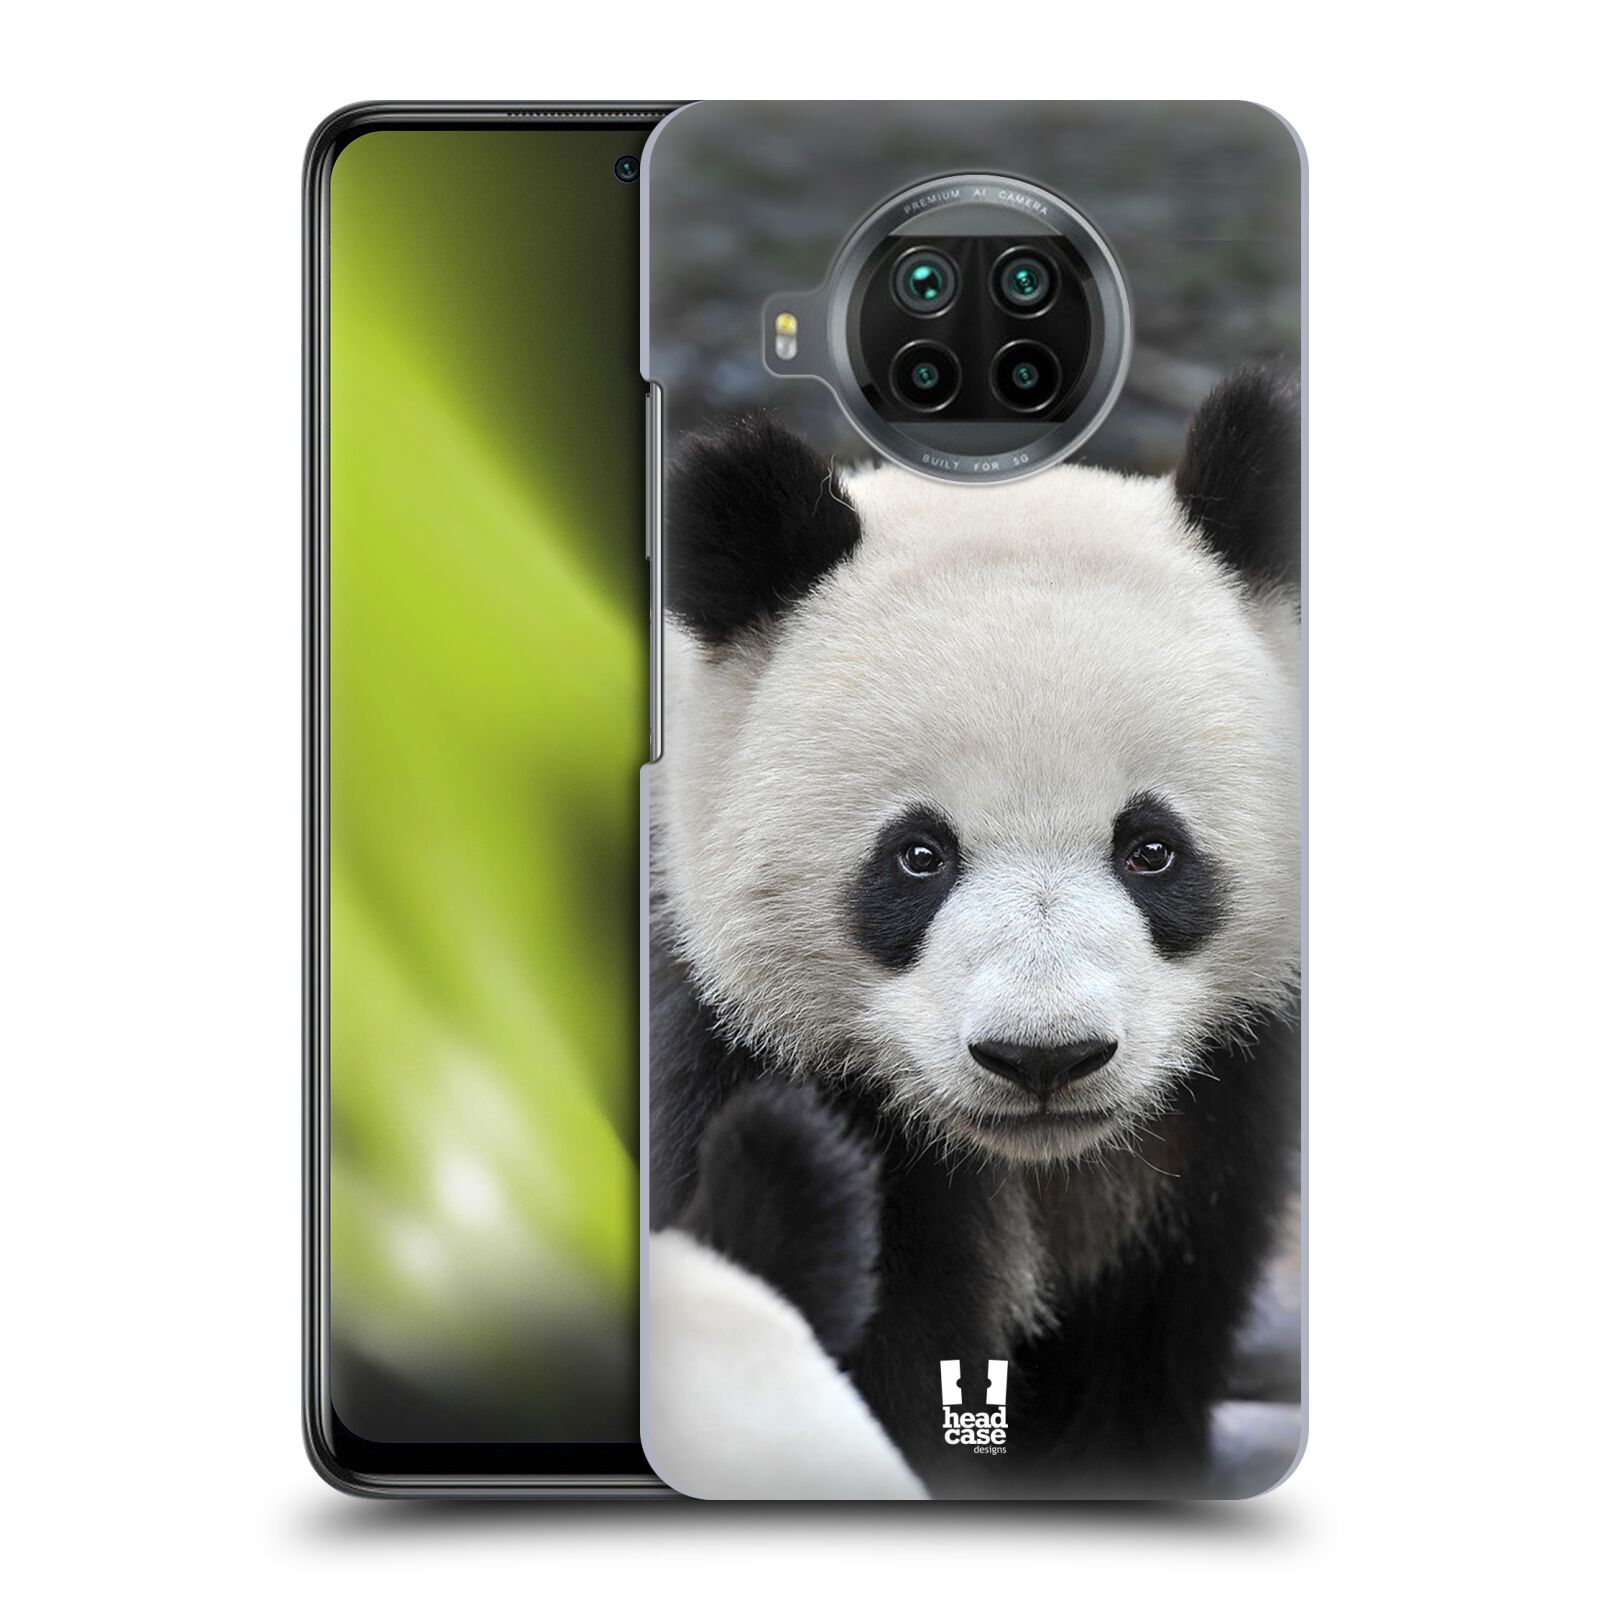 Zadní obal pro mobil Xiaomi Mi 10T LITE - HEAD CASE - Svět zvířat medvěd panda